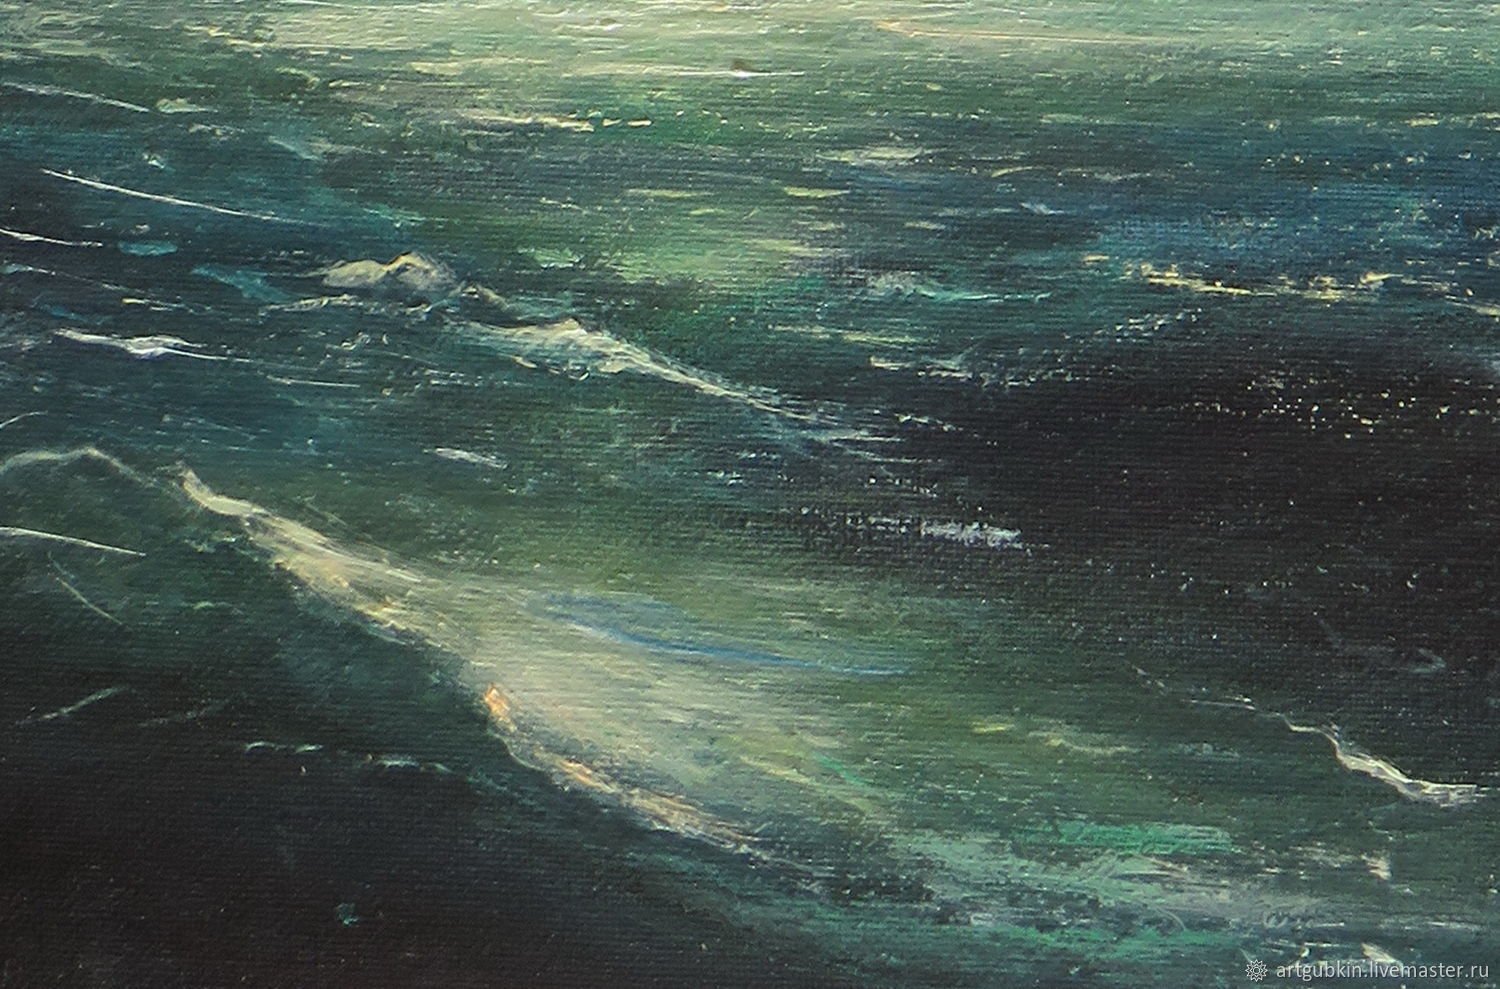 Айвазовский черное море 1881. Айвазовский чёрное море картина. И Константинович Айвазовский черное море.